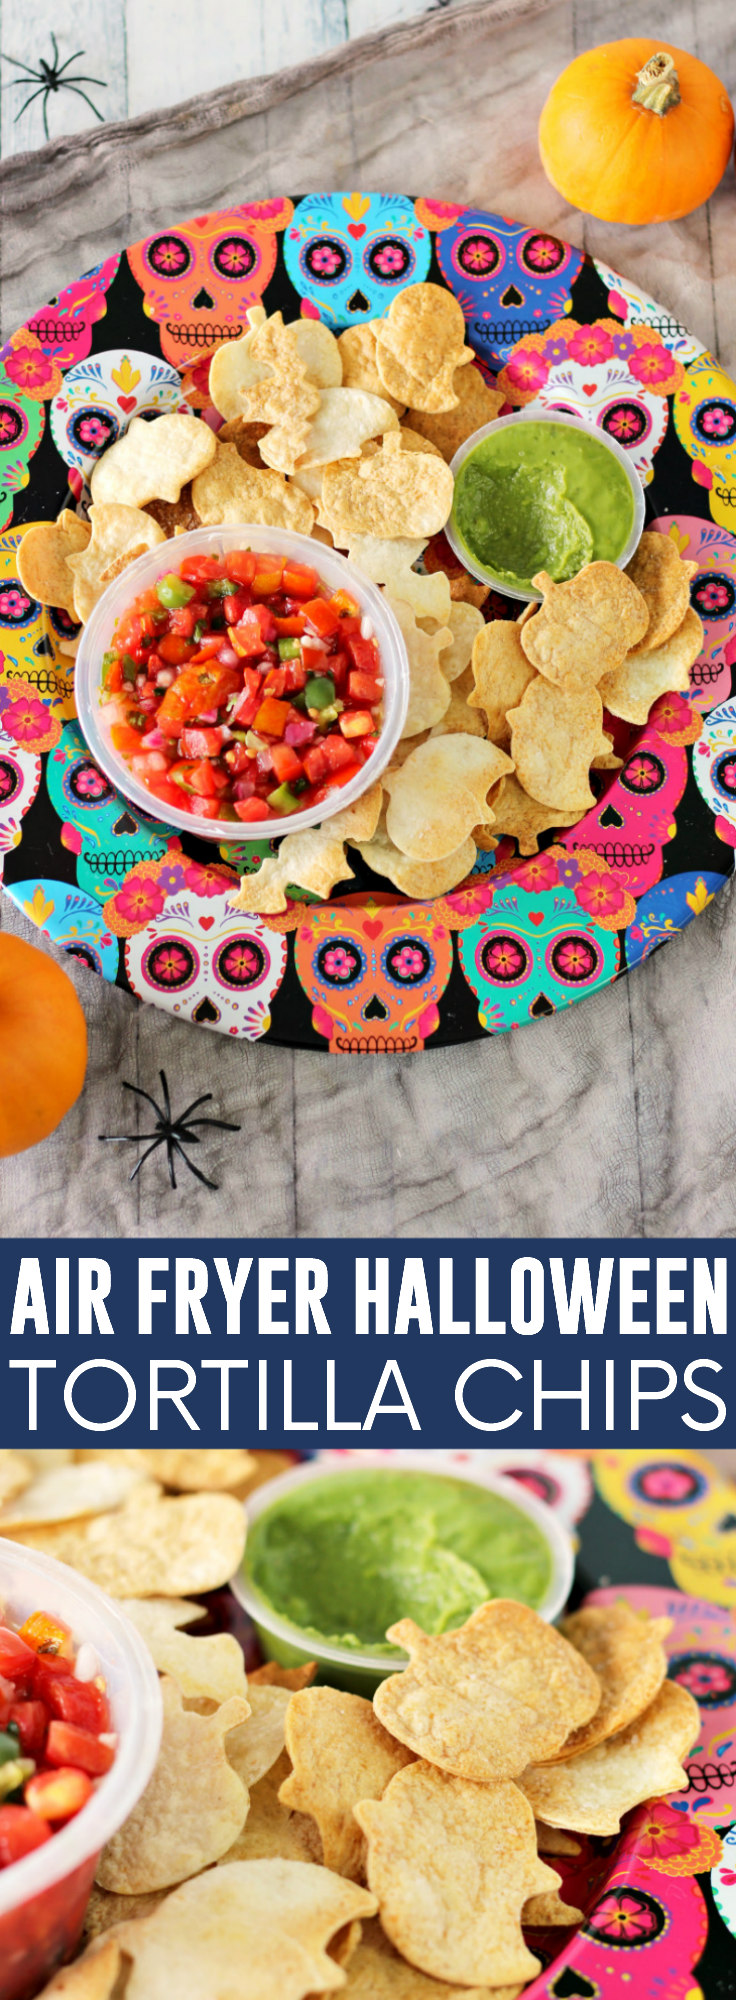 Air Fryer Halloween Tortilla Chips pinnable image.